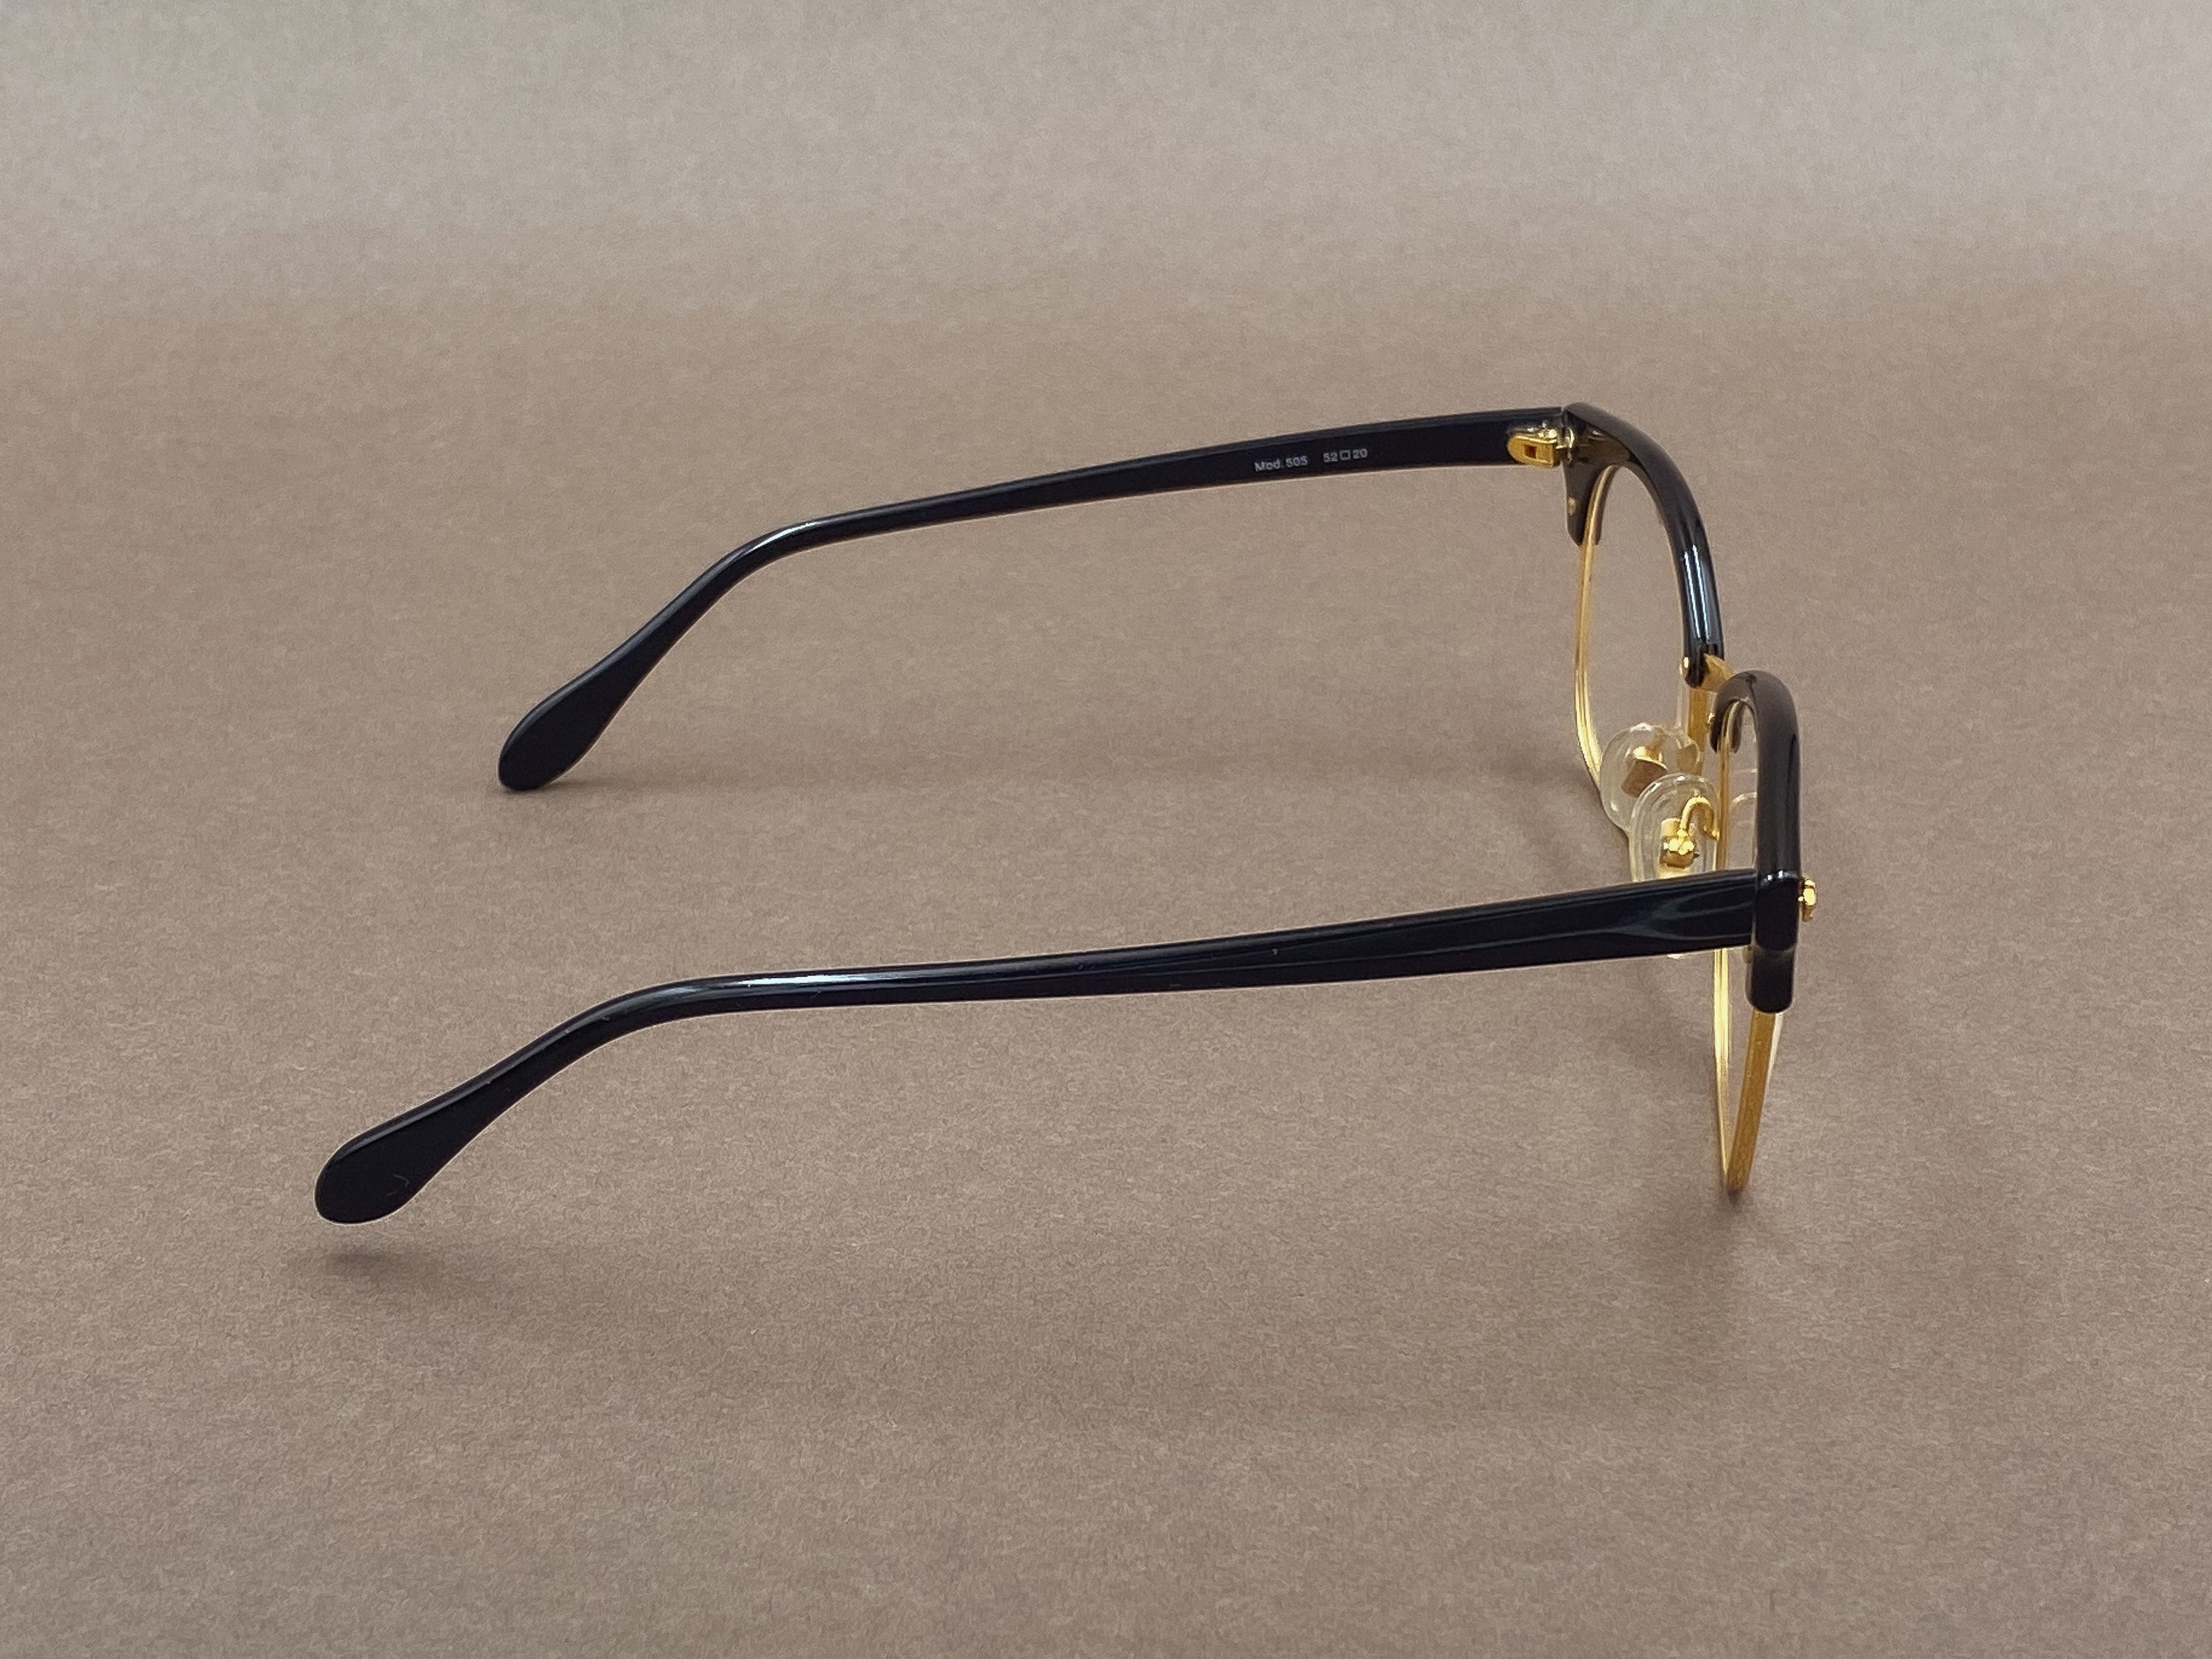 Bartoli 505 eyeglasses